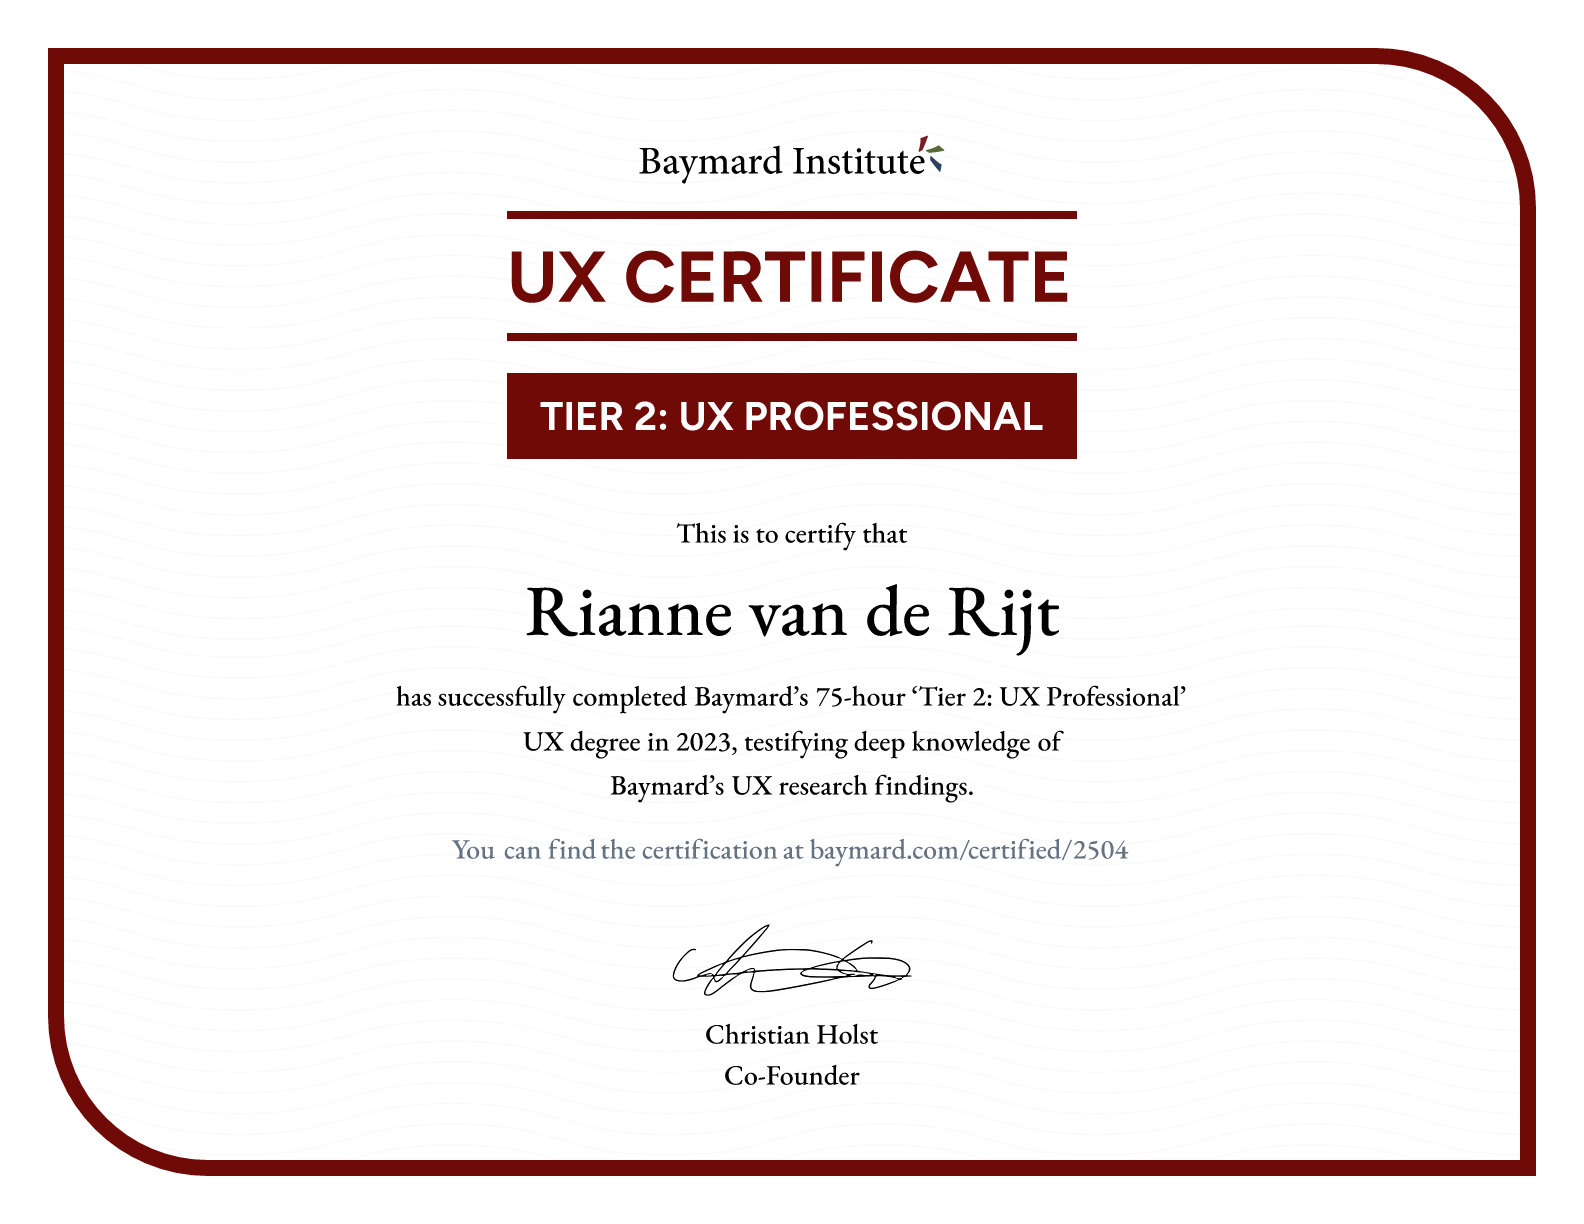 Rianne van de Rijt’s certificate